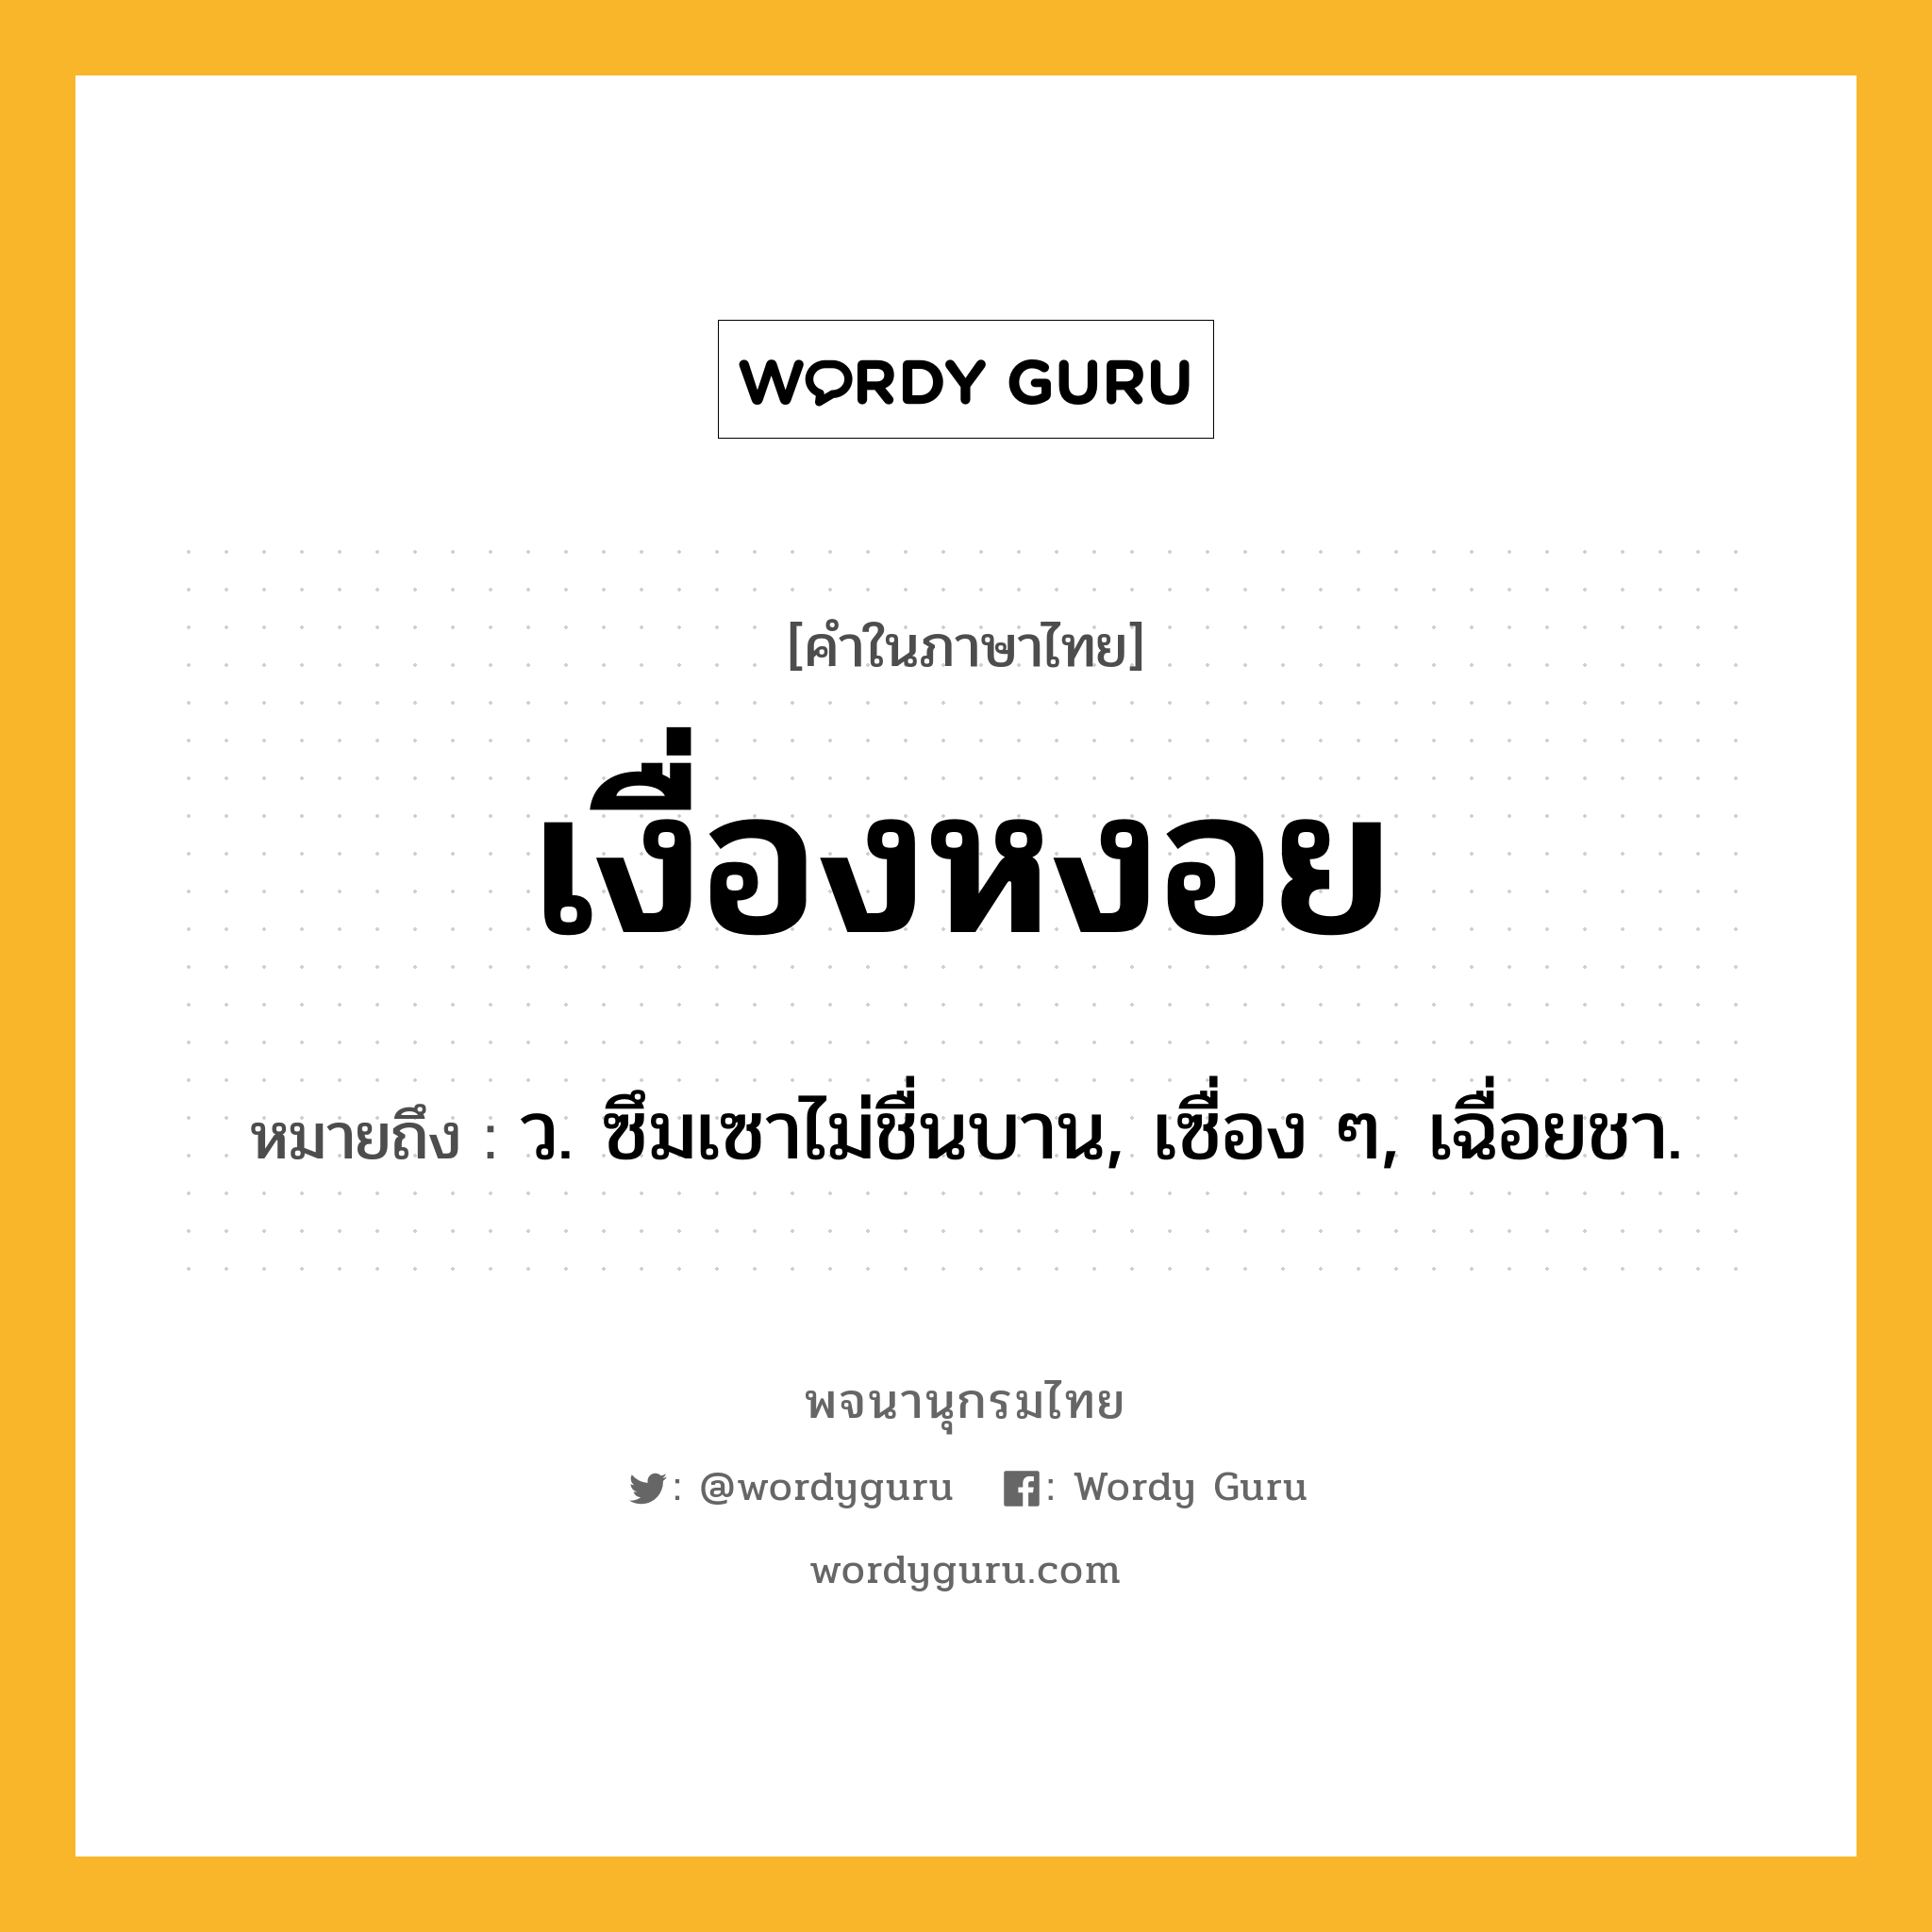 เงื่องหงอย ความหมาย หมายถึงอะไร?, คำในภาษาไทย เงื่องหงอย หมายถึง ว. ซึมเซาไม่ชื่นบาน, เซื่อง ๆ, เฉื่อยชา.